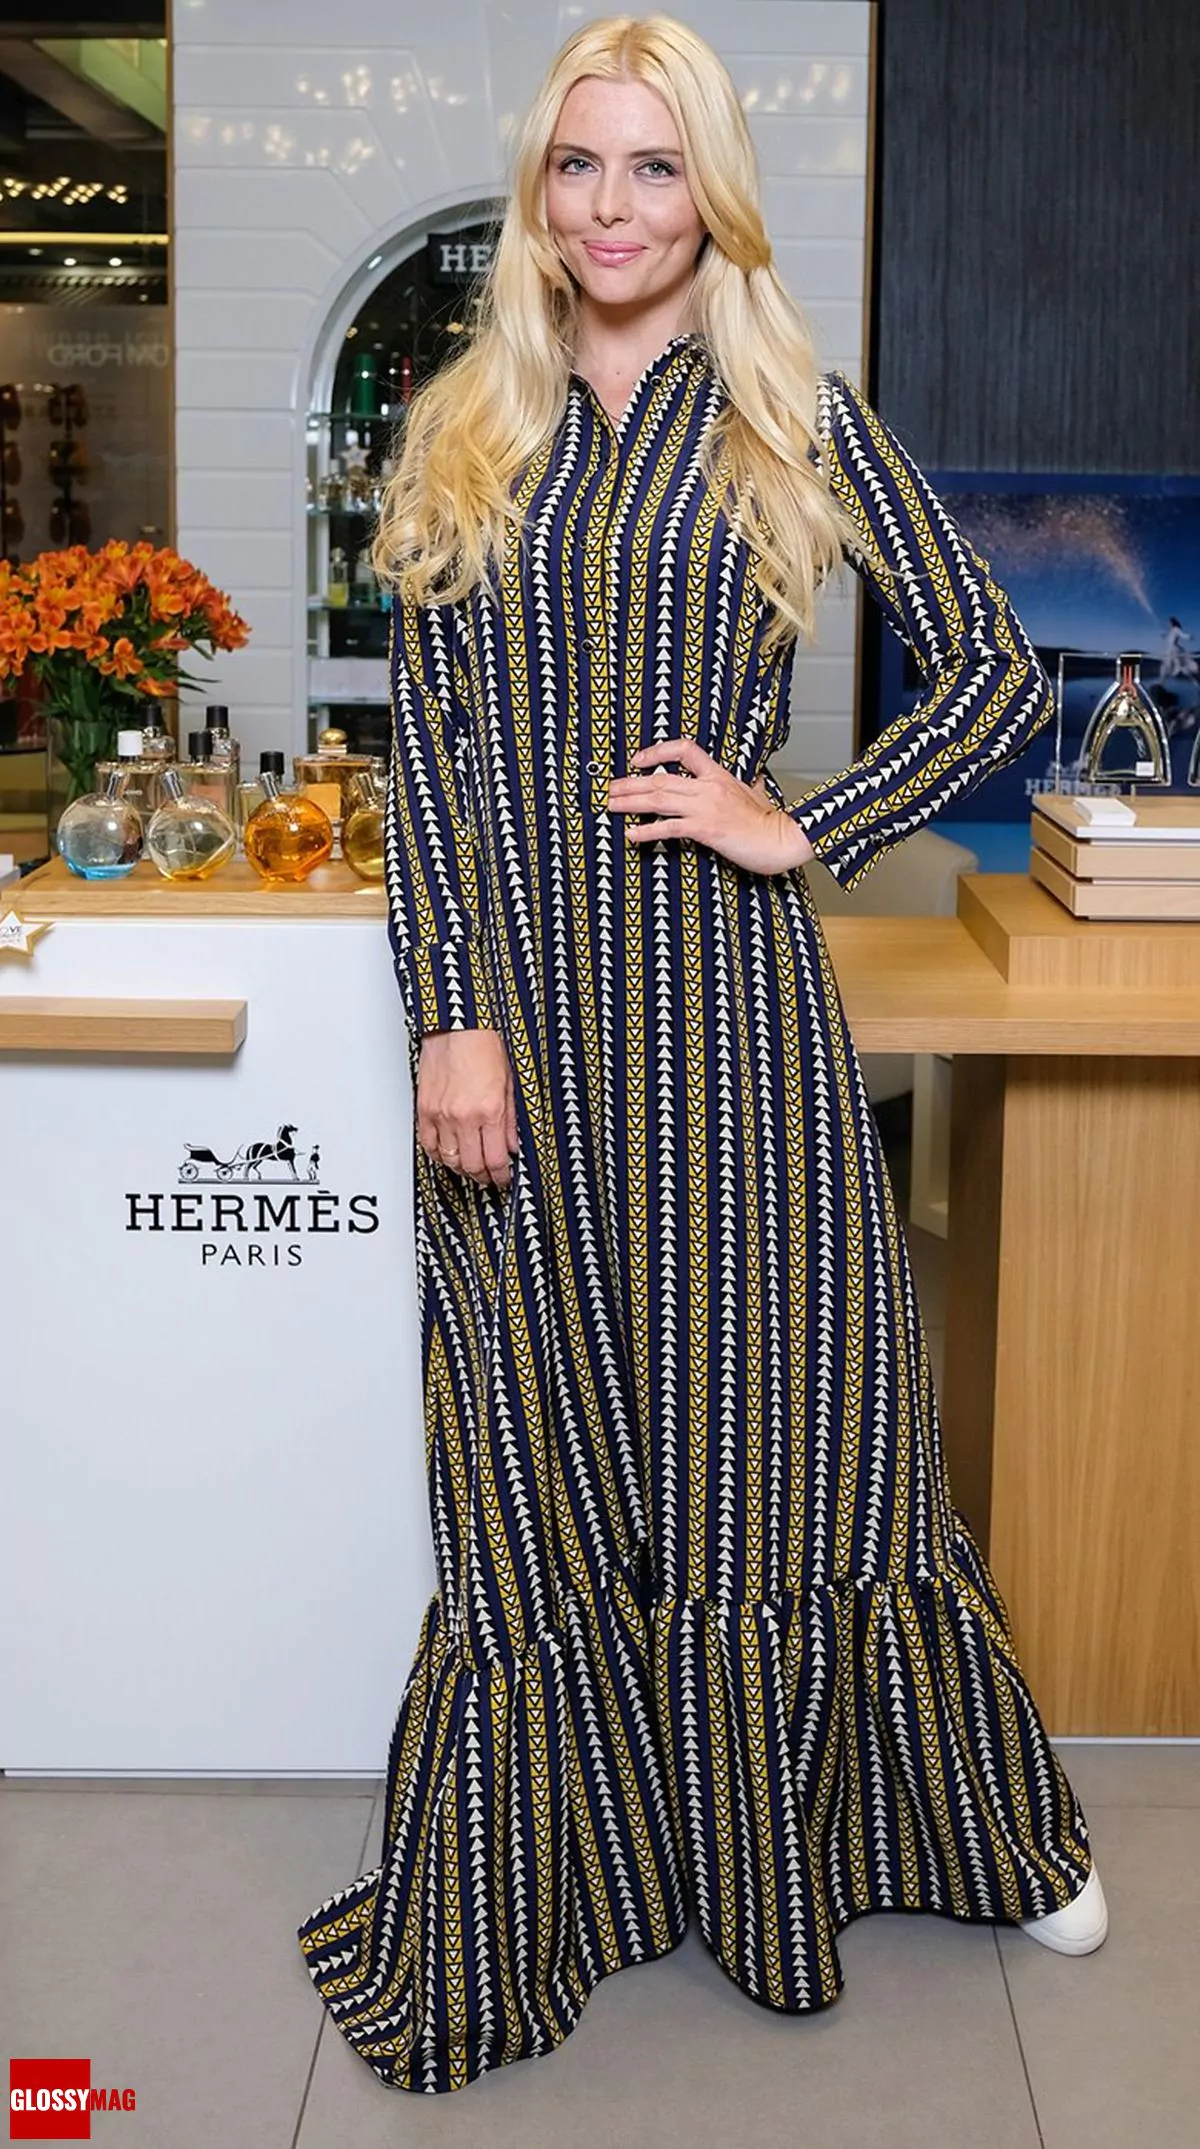 Анна Чурина в корнере Hermès на закрытом мероприятии Beauty CHOICE в Rivoli Perfumery в ТГ Модный сезон, 28 июня 2017 г.